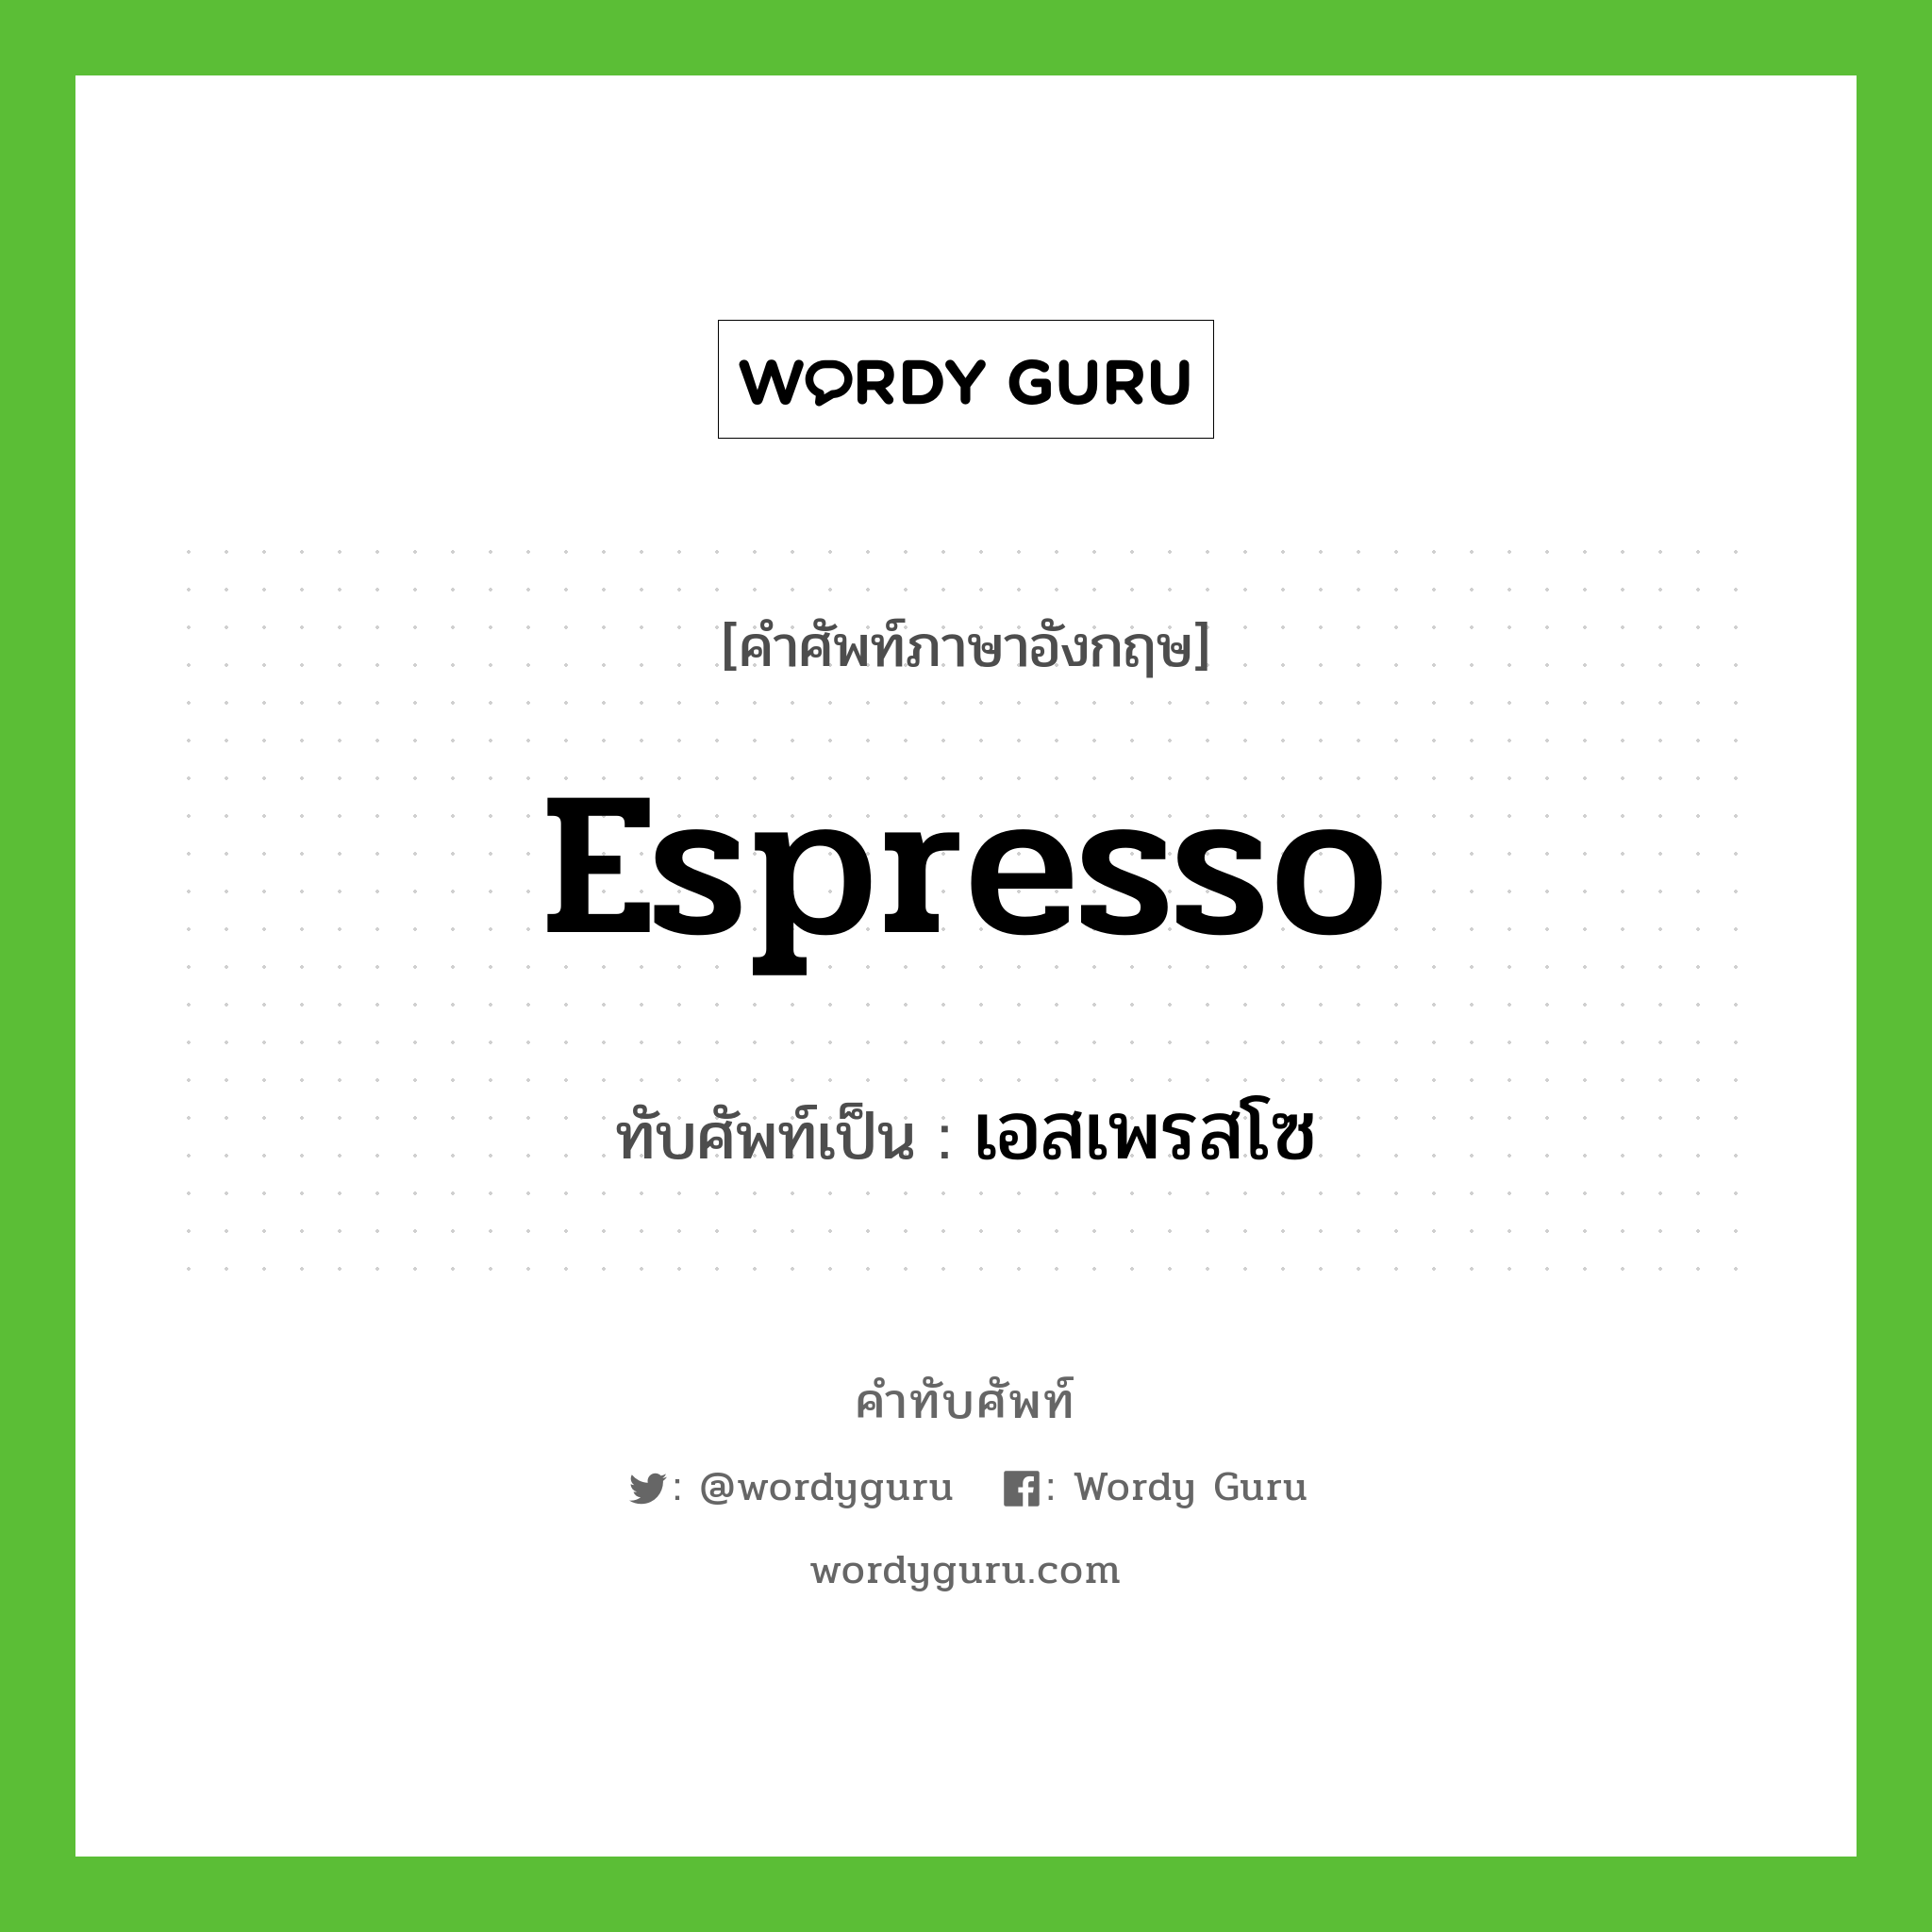 espresso เขียนเป็นคำไทยว่าอะไร?, คำศัพท์ภาษาอังกฤษ espresso ทับศัพท์เป็น เอสเพรสโซ